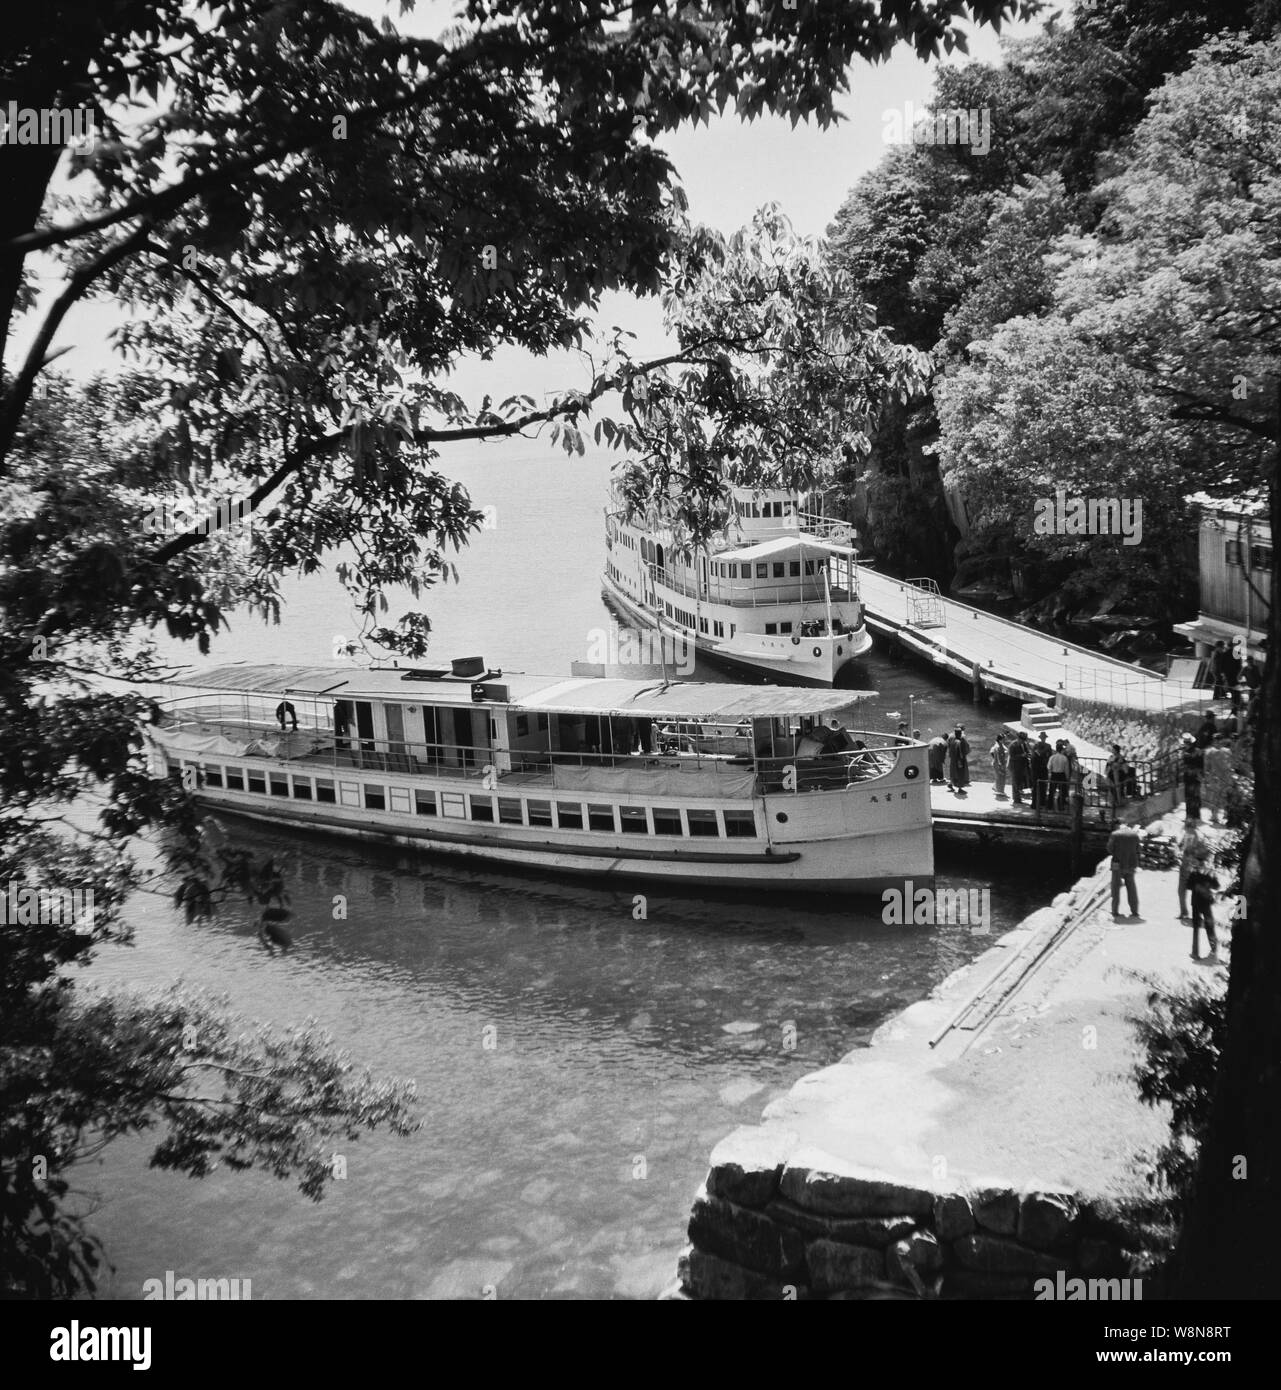 [ 1930 Giappone - nave da crociera sul Lago Biwa ] - Navi del Biwako Kisen Steamship Co.,Ltd., una società che organizza crociere e traghetti sul Lago Biwa nella prefettura di Shiga. La società è stata fondata nel 1869 (Meiji 2) ed è ancora oggi nel mondo degli affari. La nave sul retro di questa foto è il Hakucho Maru (Swan). Essa è stata completata come Momotaro Maru nel marzo 1927 (Showa 2), ma rinominato nel febbraio 1930 (Showa 5). Xx secolo vintage pellicola negativa. Foto Stock